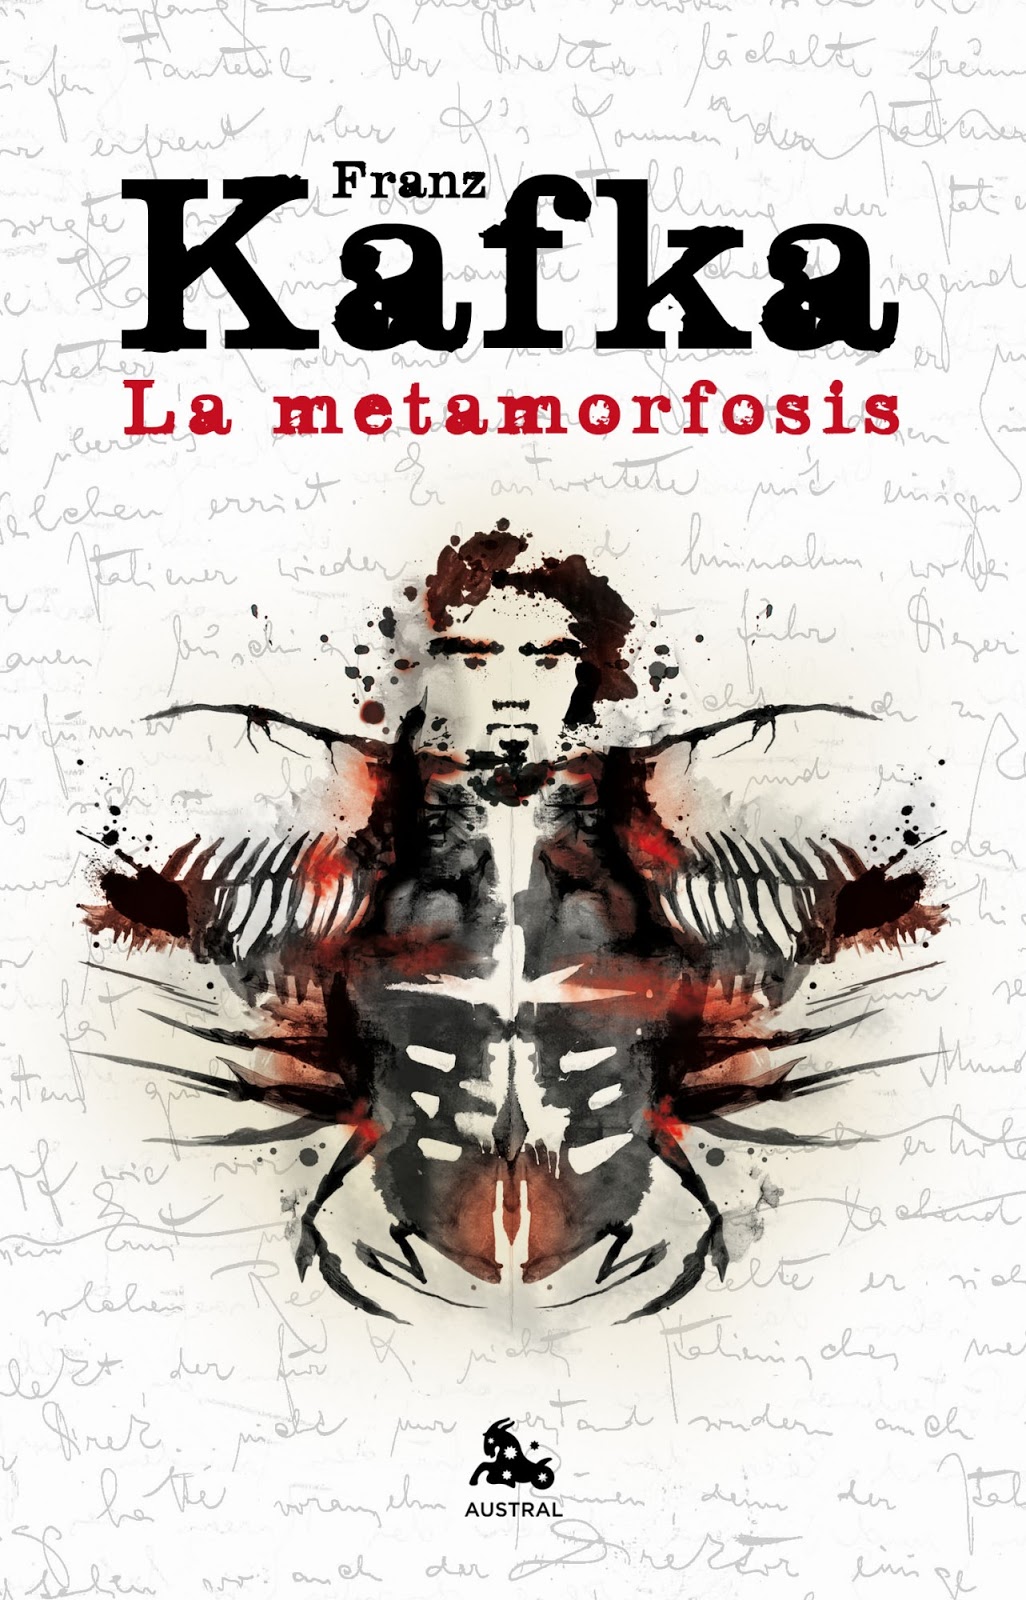 La Metamorfosis. Franz Kafka. Investigaciones Científicas y Psicoterapia